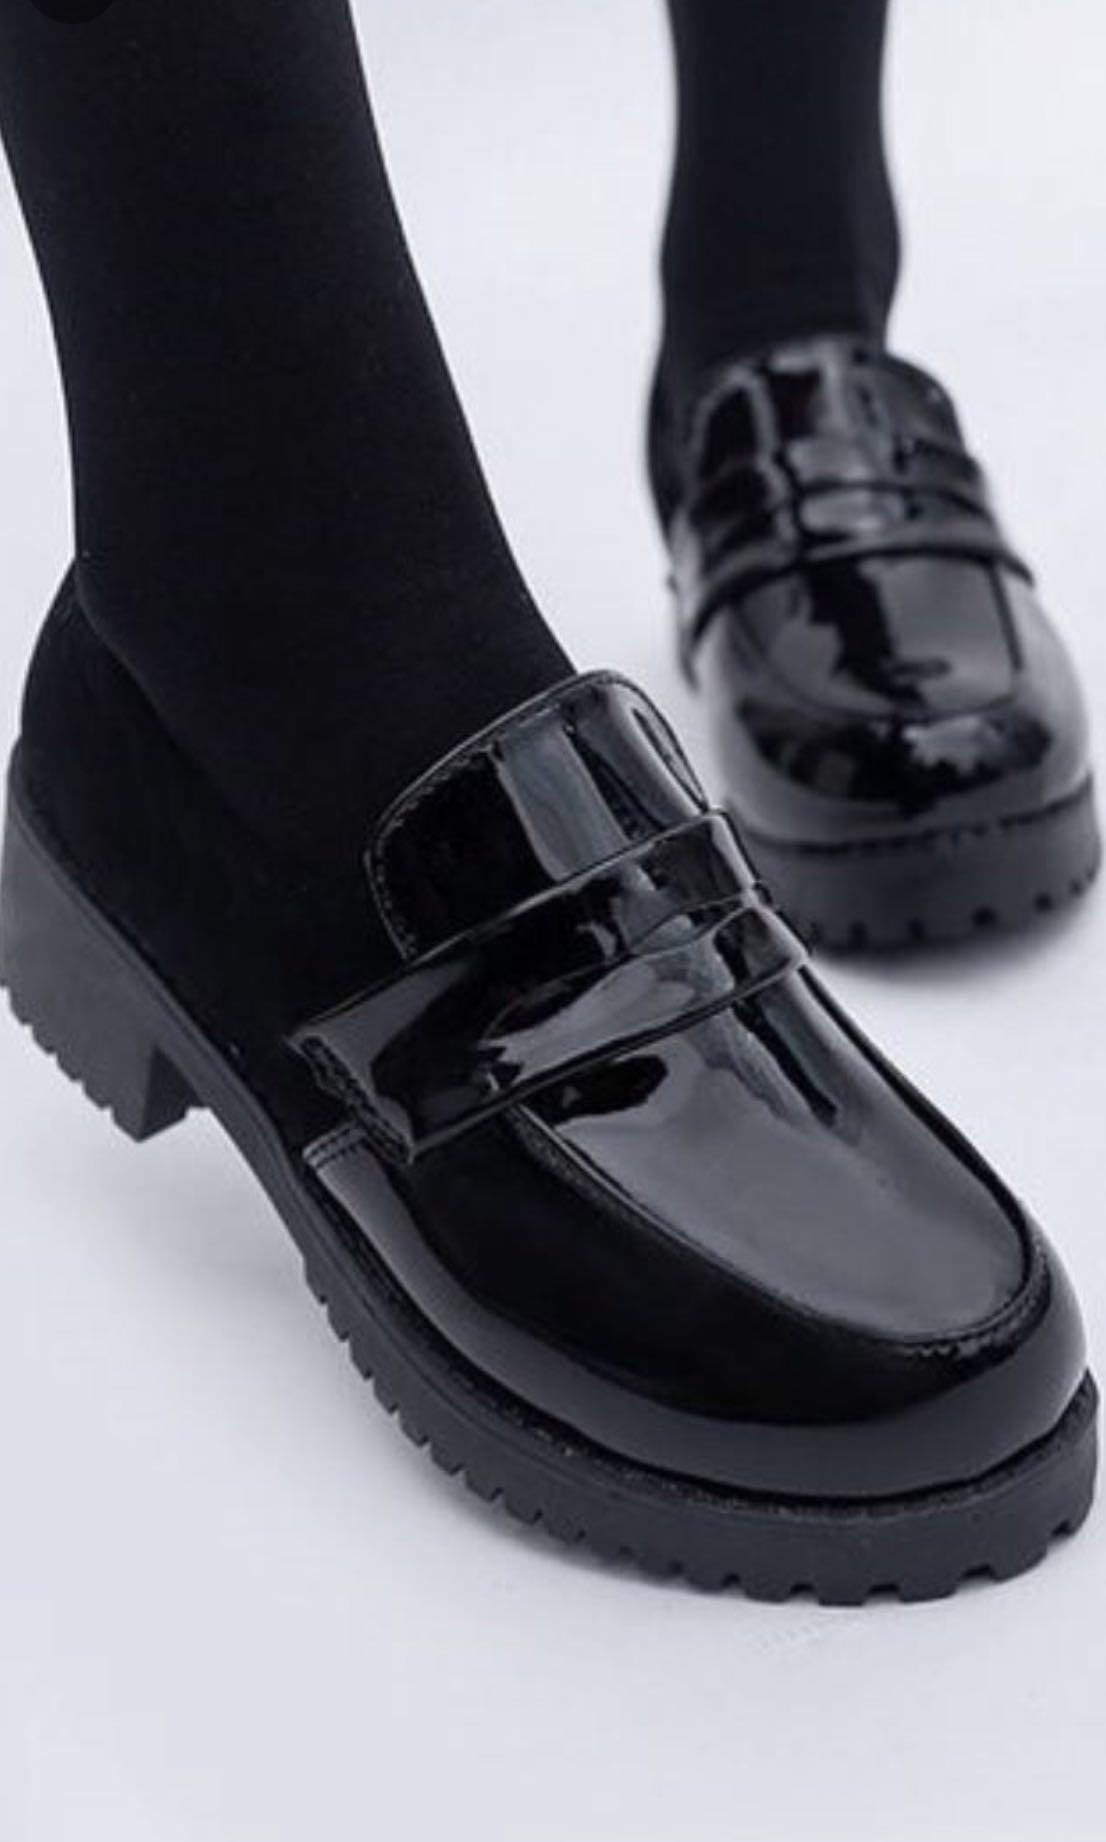 WTS Black Japanese school shoes, Women's Fashion, Footwear, Sneakers on ...